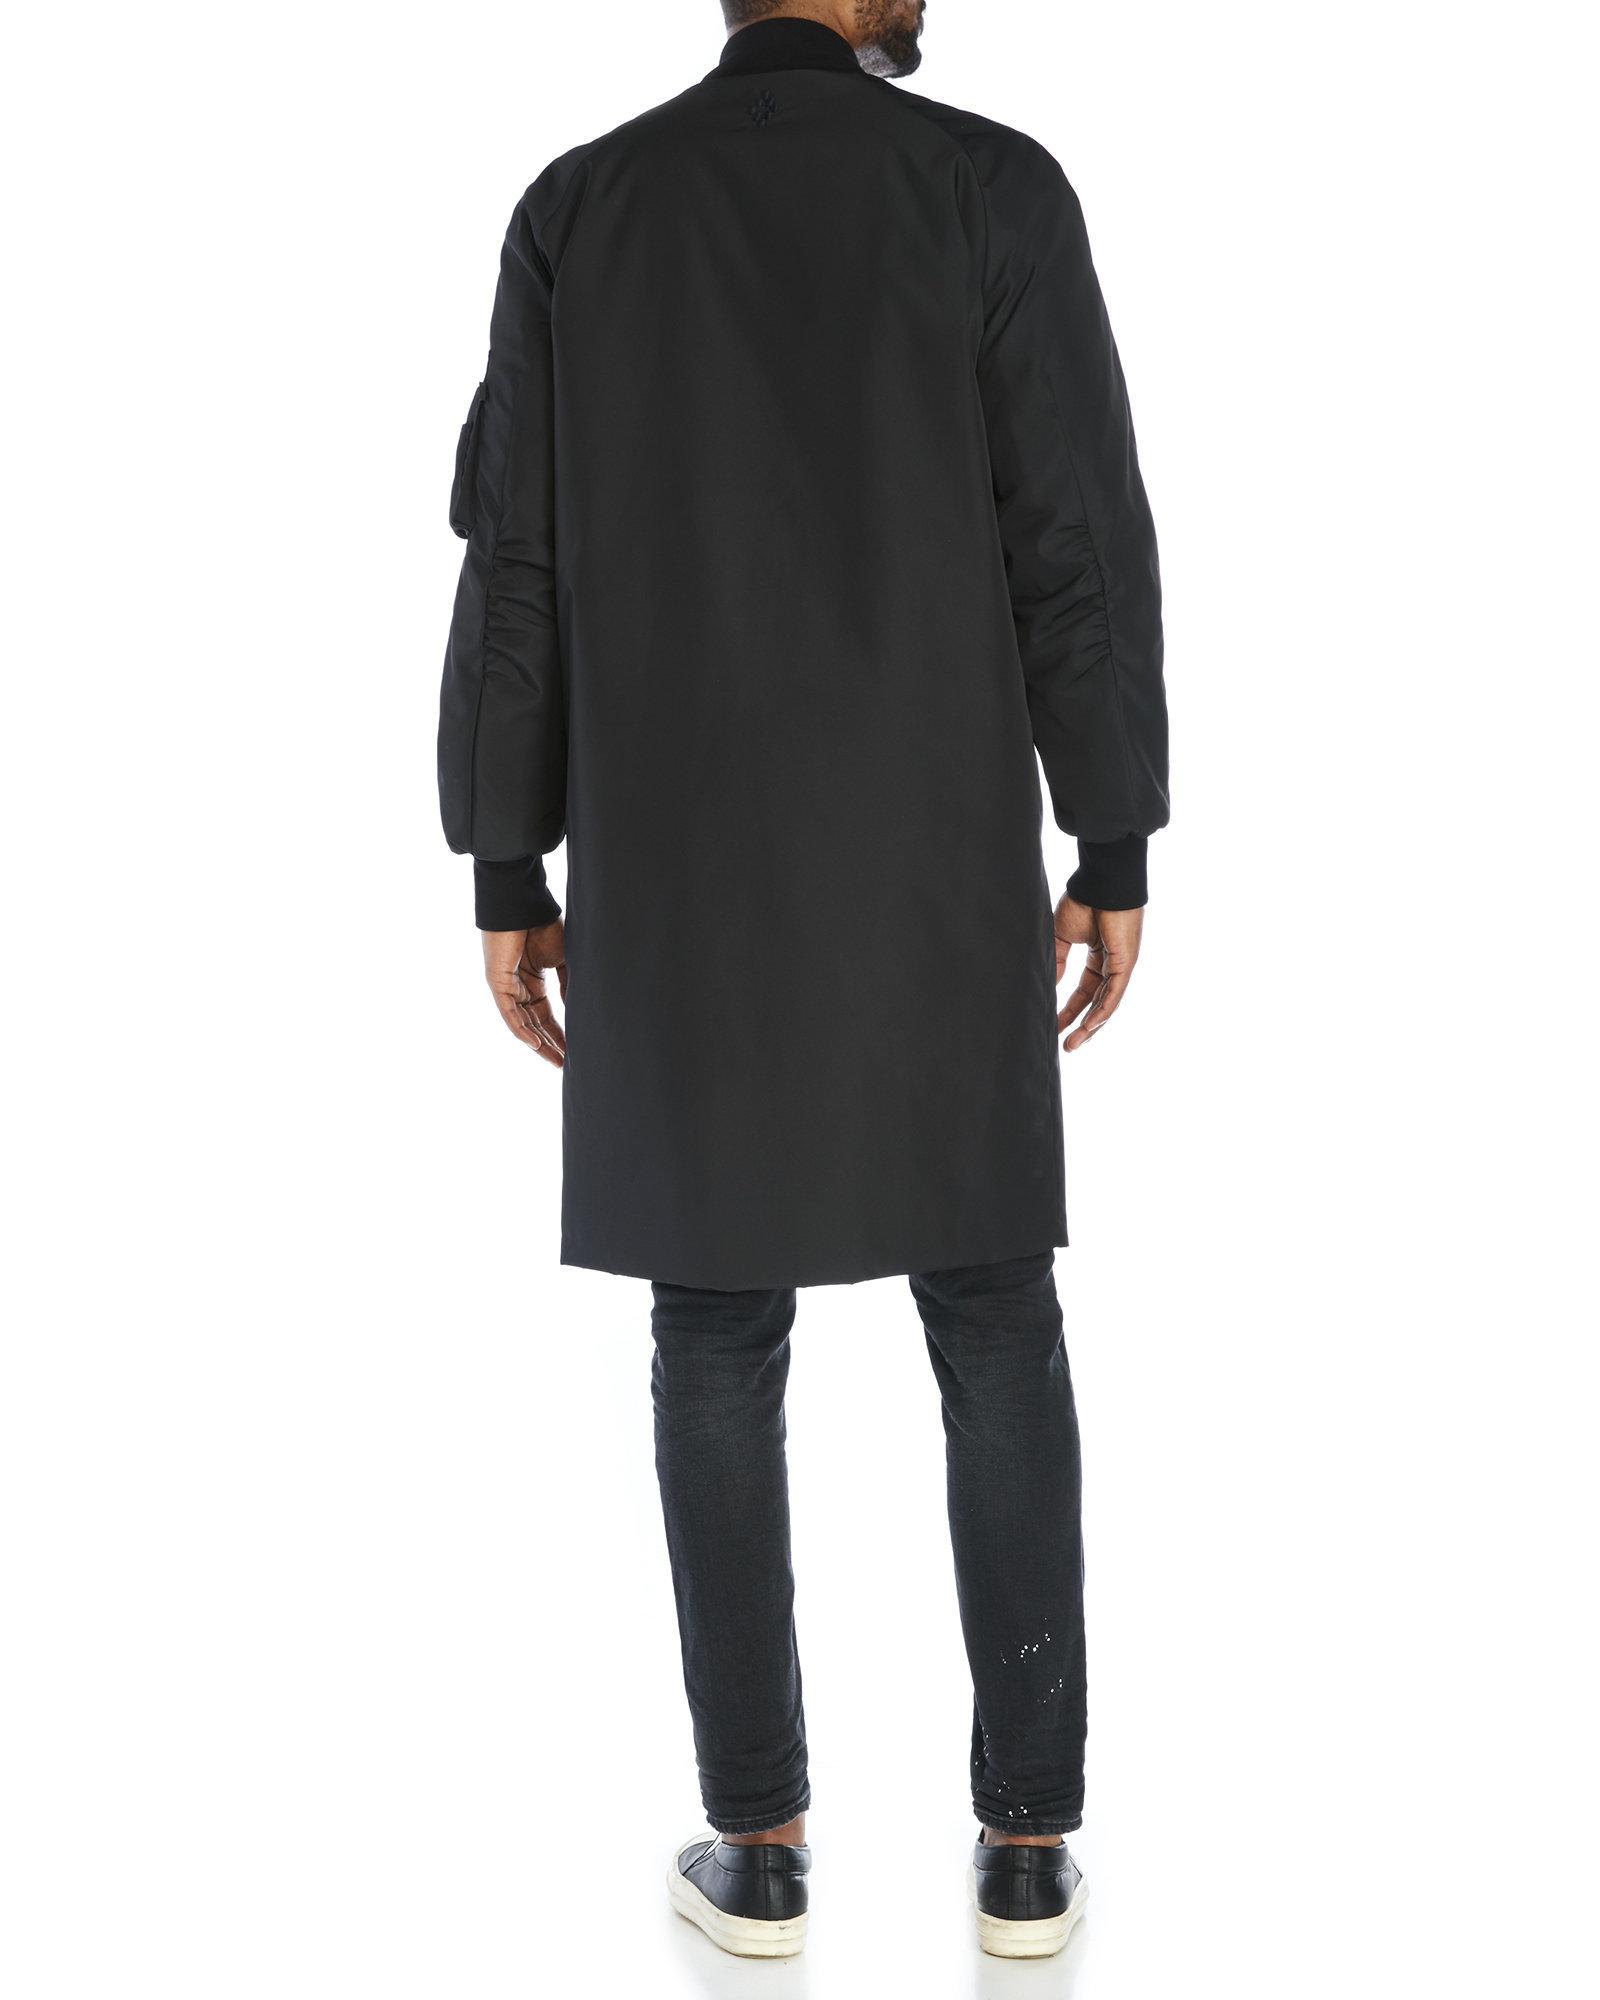 Lyst - Marcelo Burlon Rahue Reversible Long Jacket in Black for Men